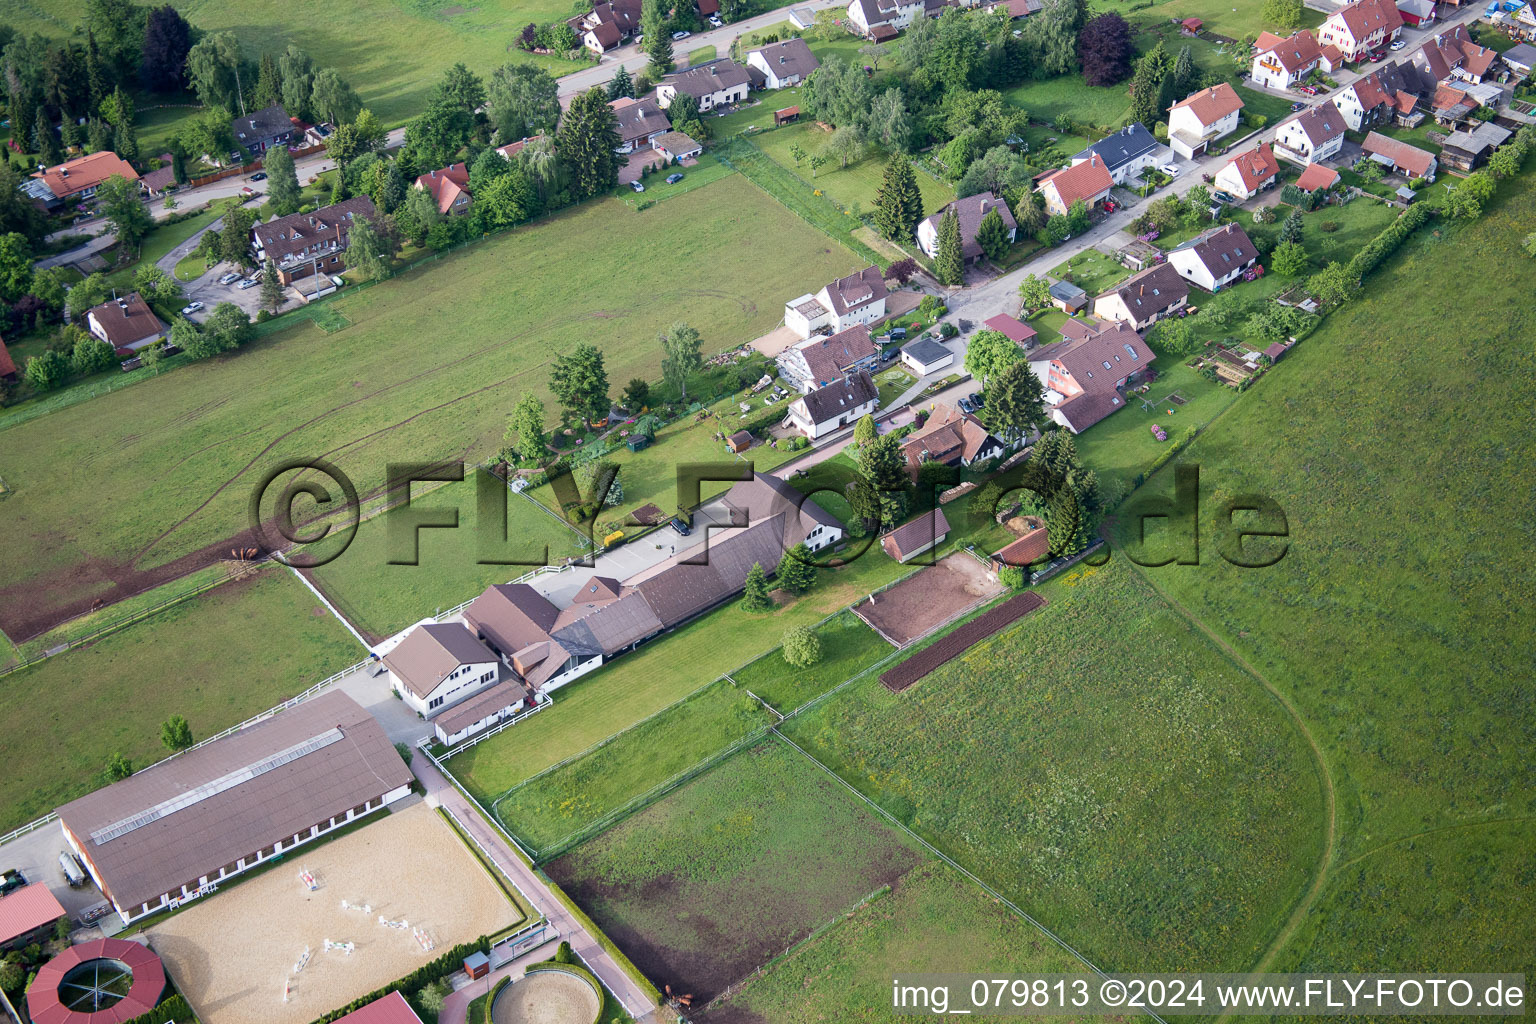 Drone recording of Stud Dobel in Dobel in the state Baden-Wuerttemberg, Germany